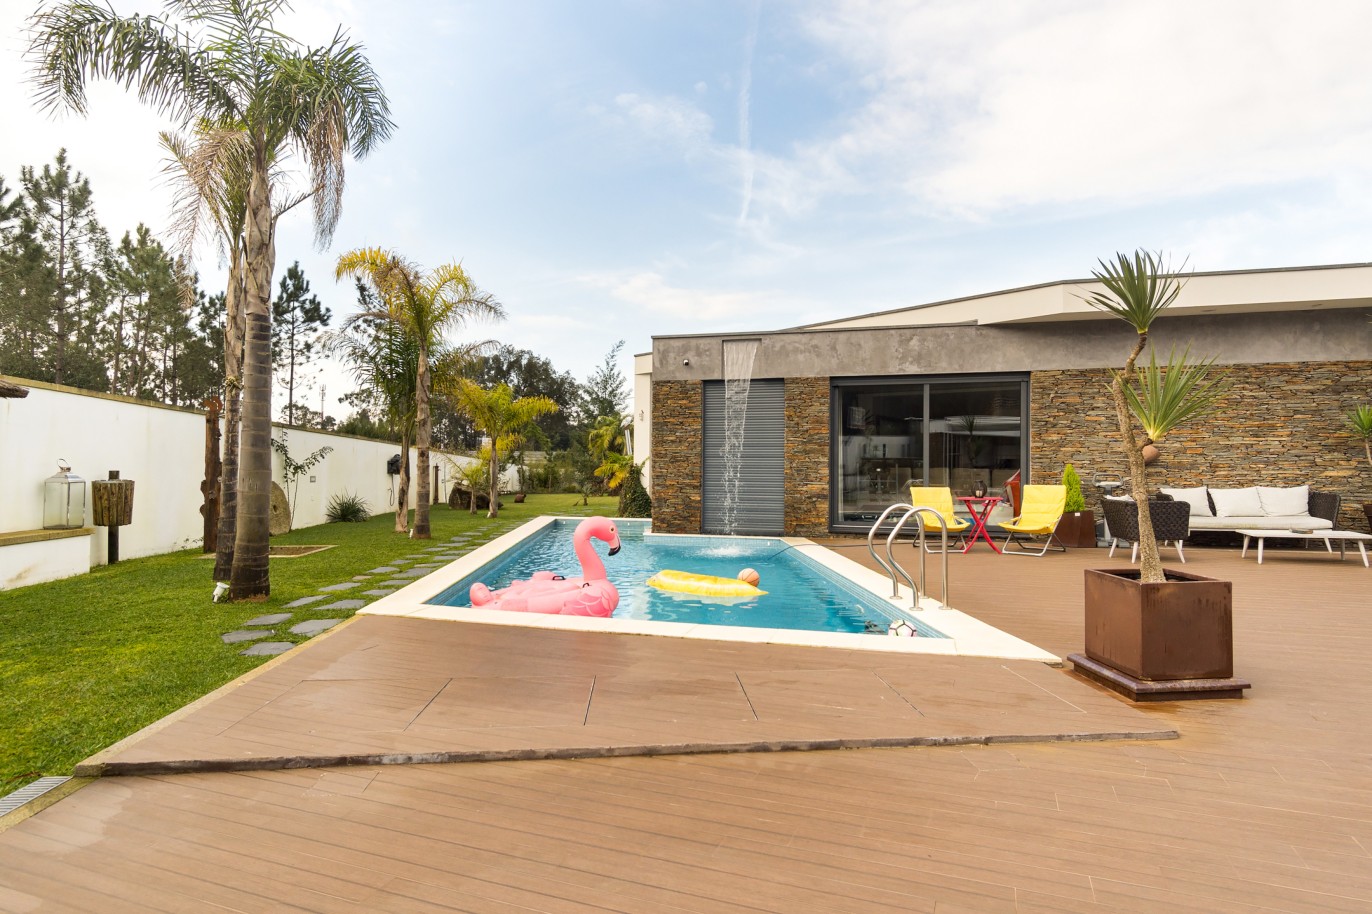 Vente : Villa individuelle de plain-pied avec piscine, terrain de jeux et jardin, à Ovar, Nord du Portugal_214926